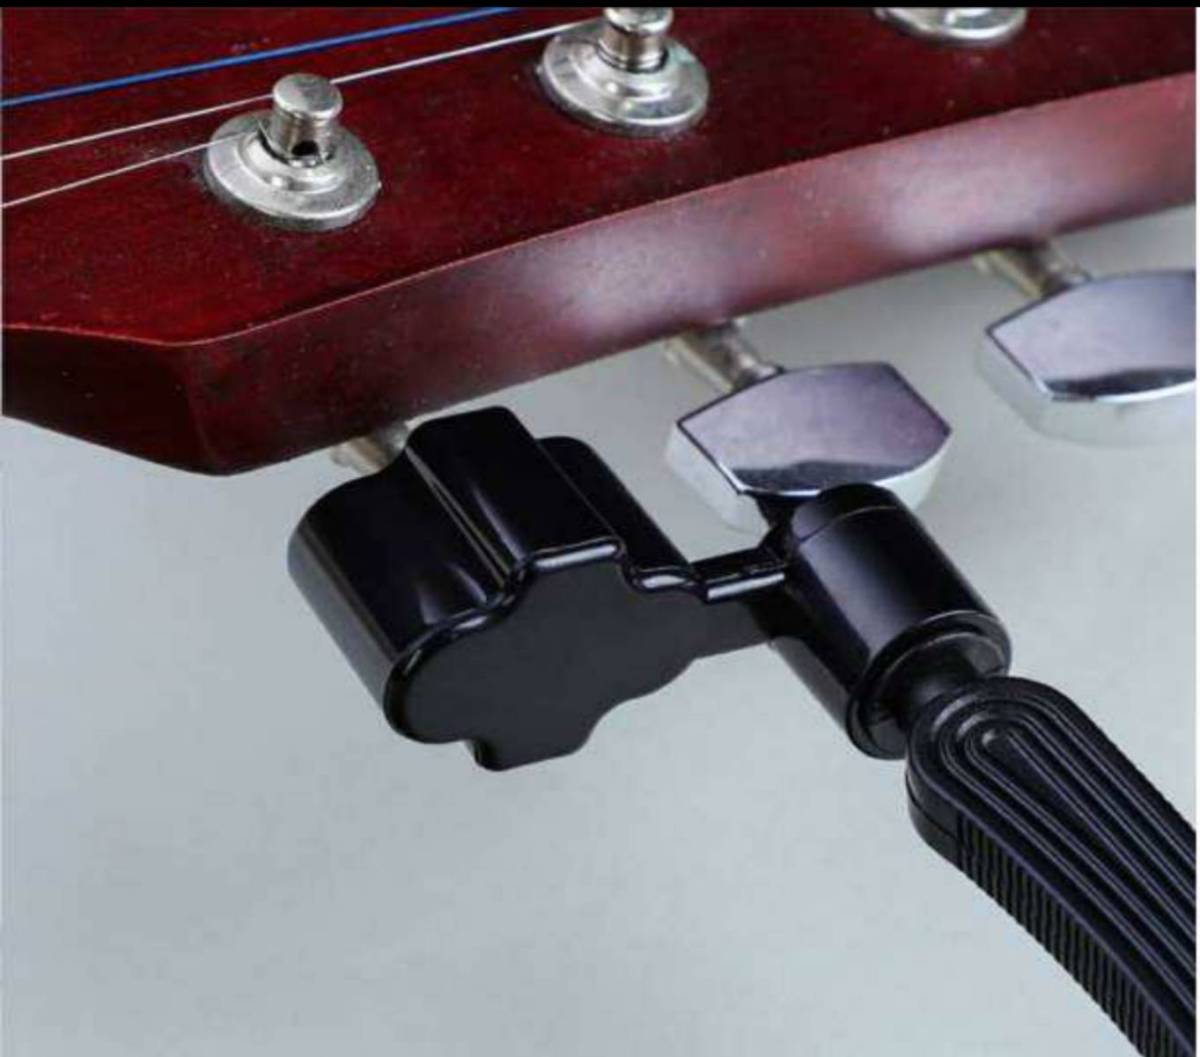  гитара струна замена -тактный кольцо резчик -тактный кольцо Winder колок поворот булавка вытащенный кусачки чёрный электро техническое обслуживание Cross кусачки tool акустический 